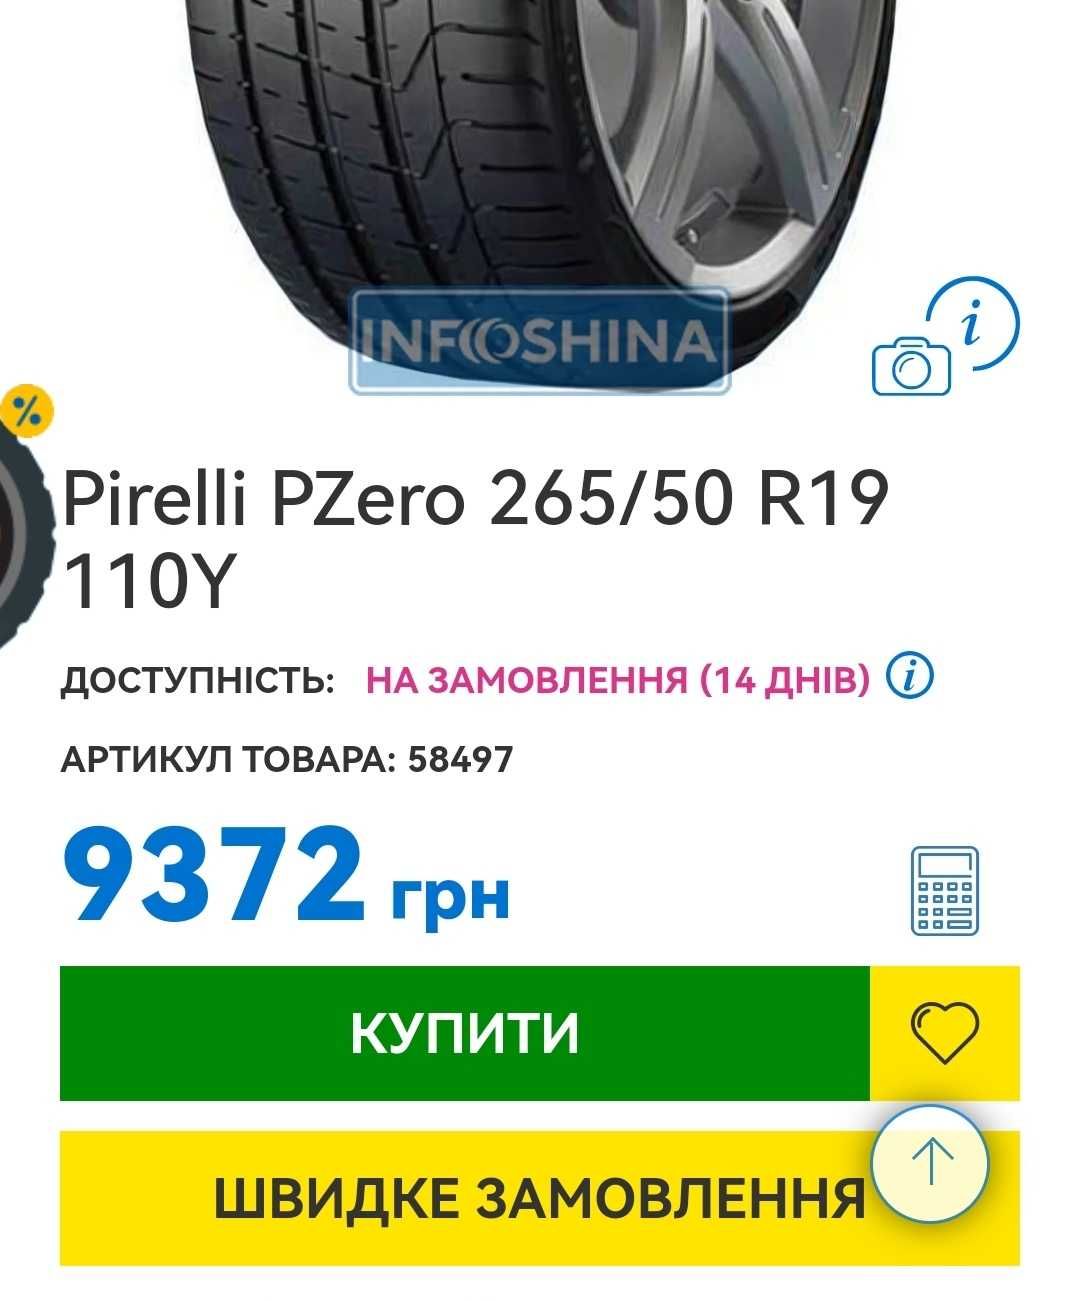 7.5 мм Pirelli Scorpion Zero 265/50 R19 M+S Шини Резана, Колеса, Гумма